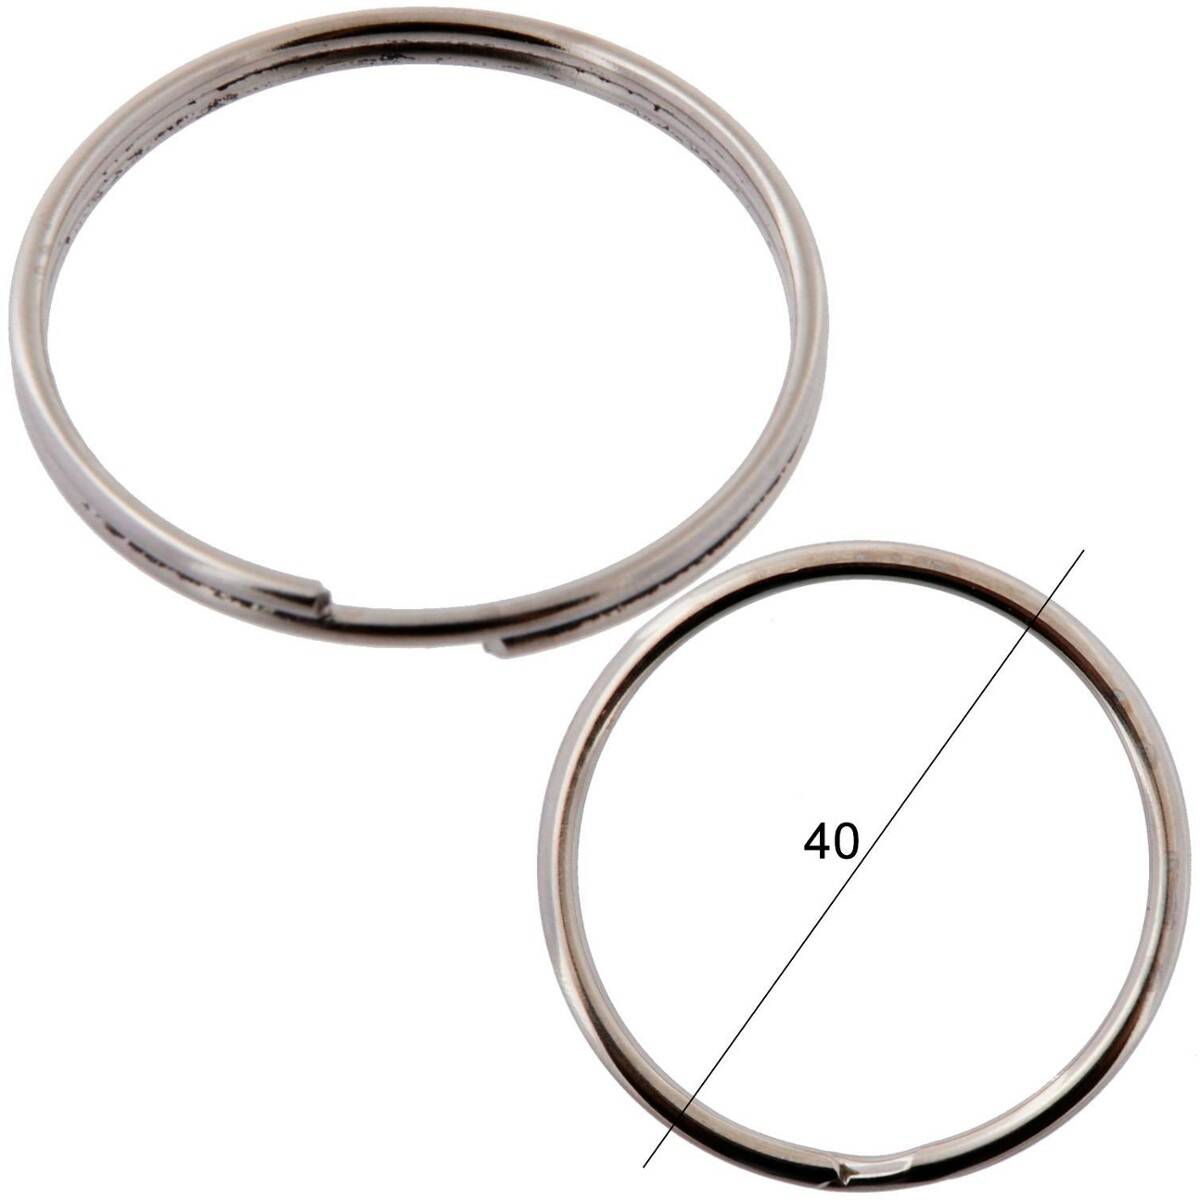 Key rings for keys WIS normal diameter 40mm